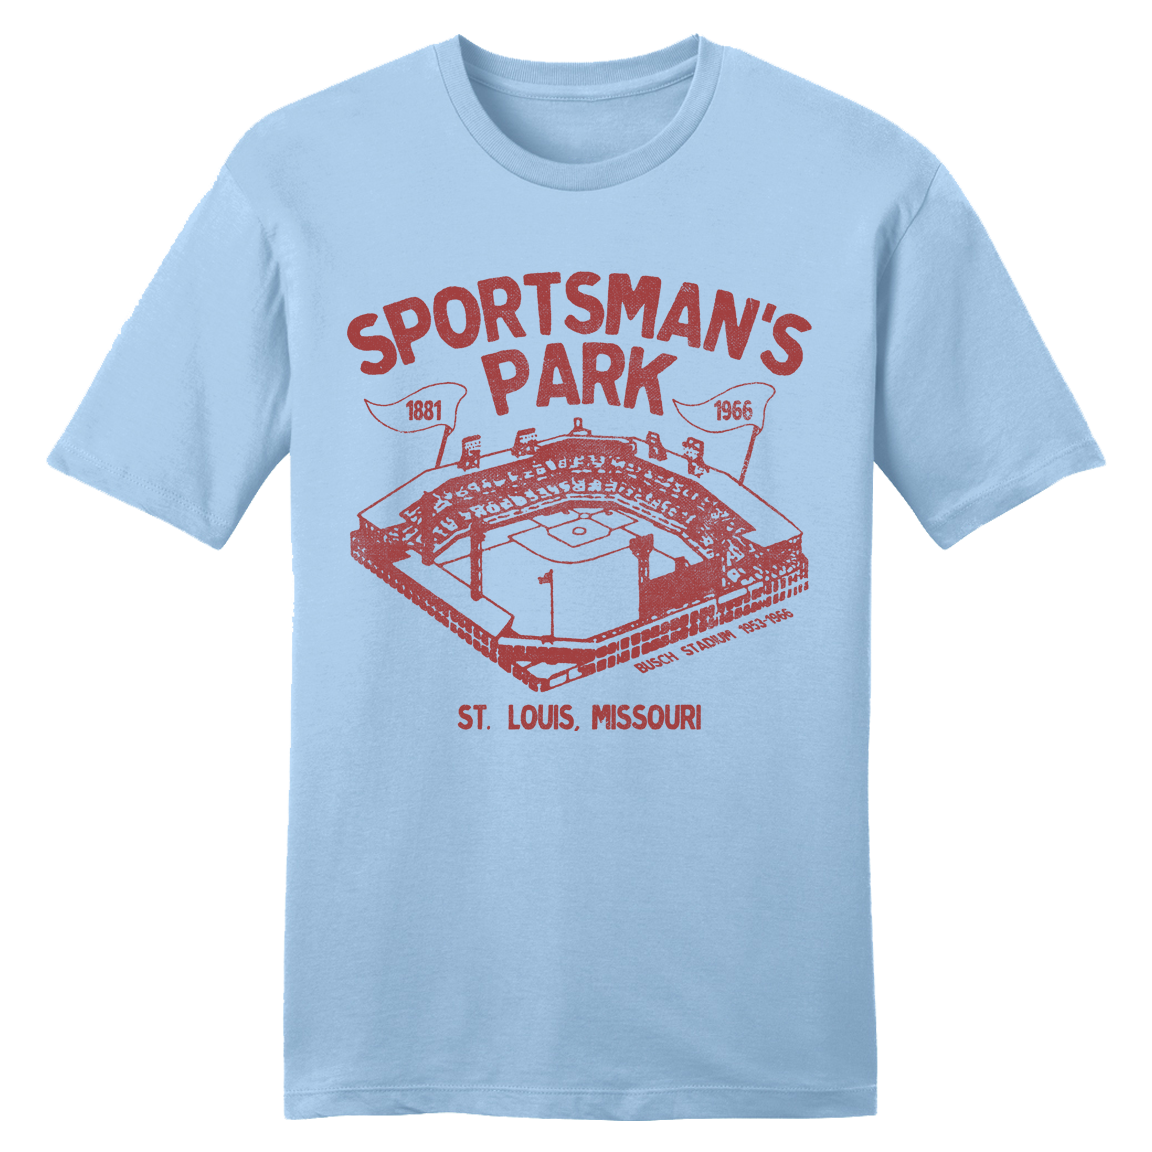 Sportsman's Park